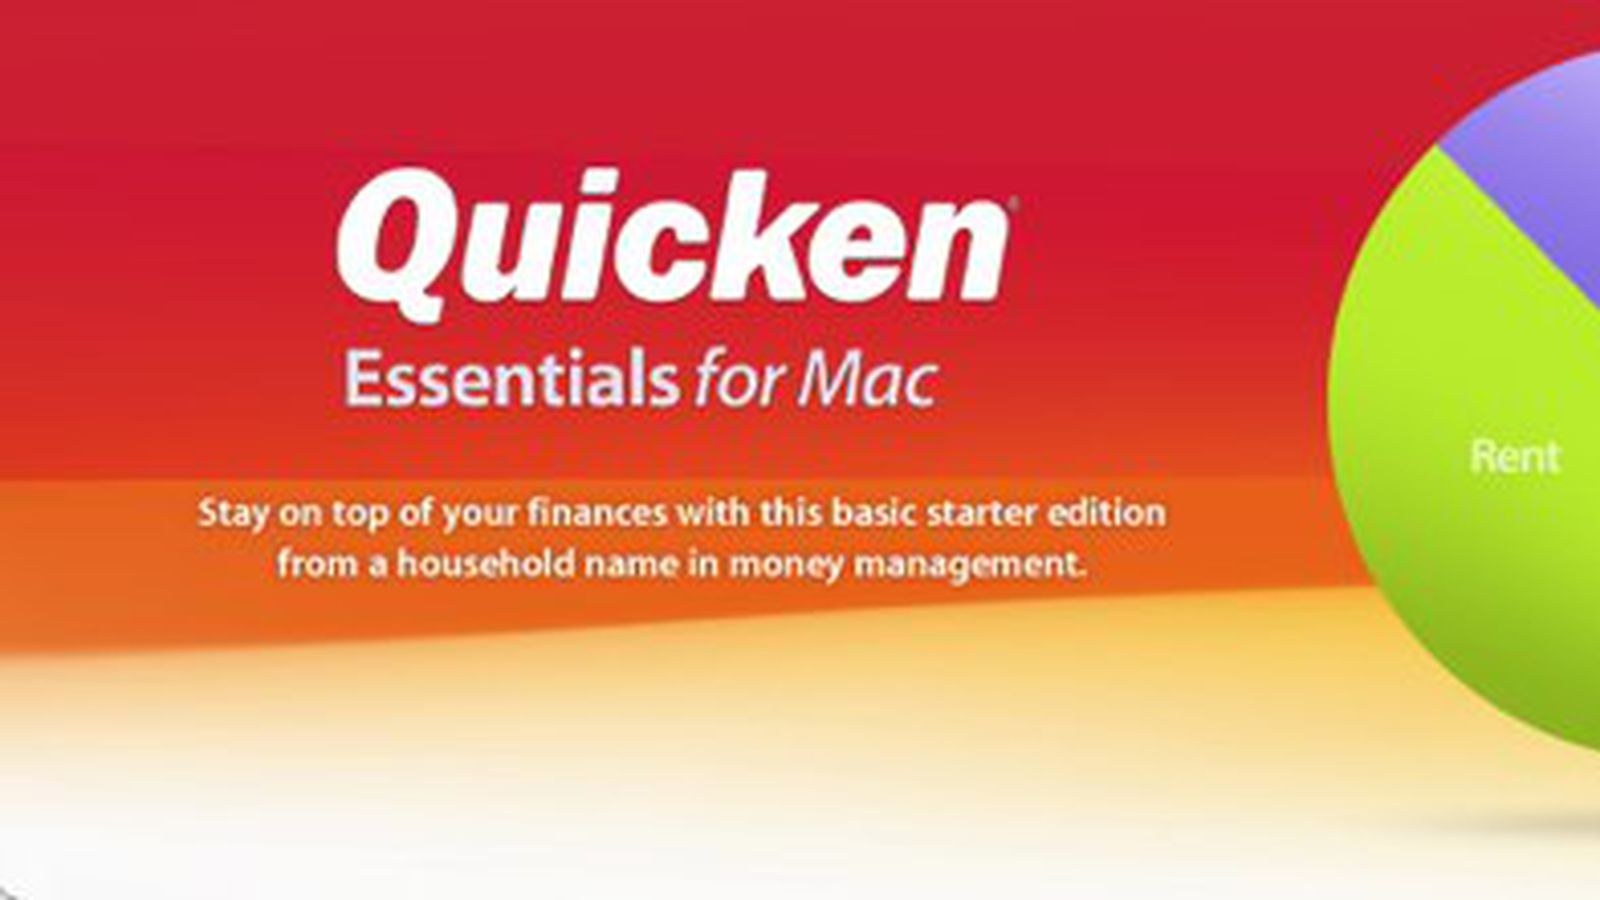 quicken essentials for mac iphone app